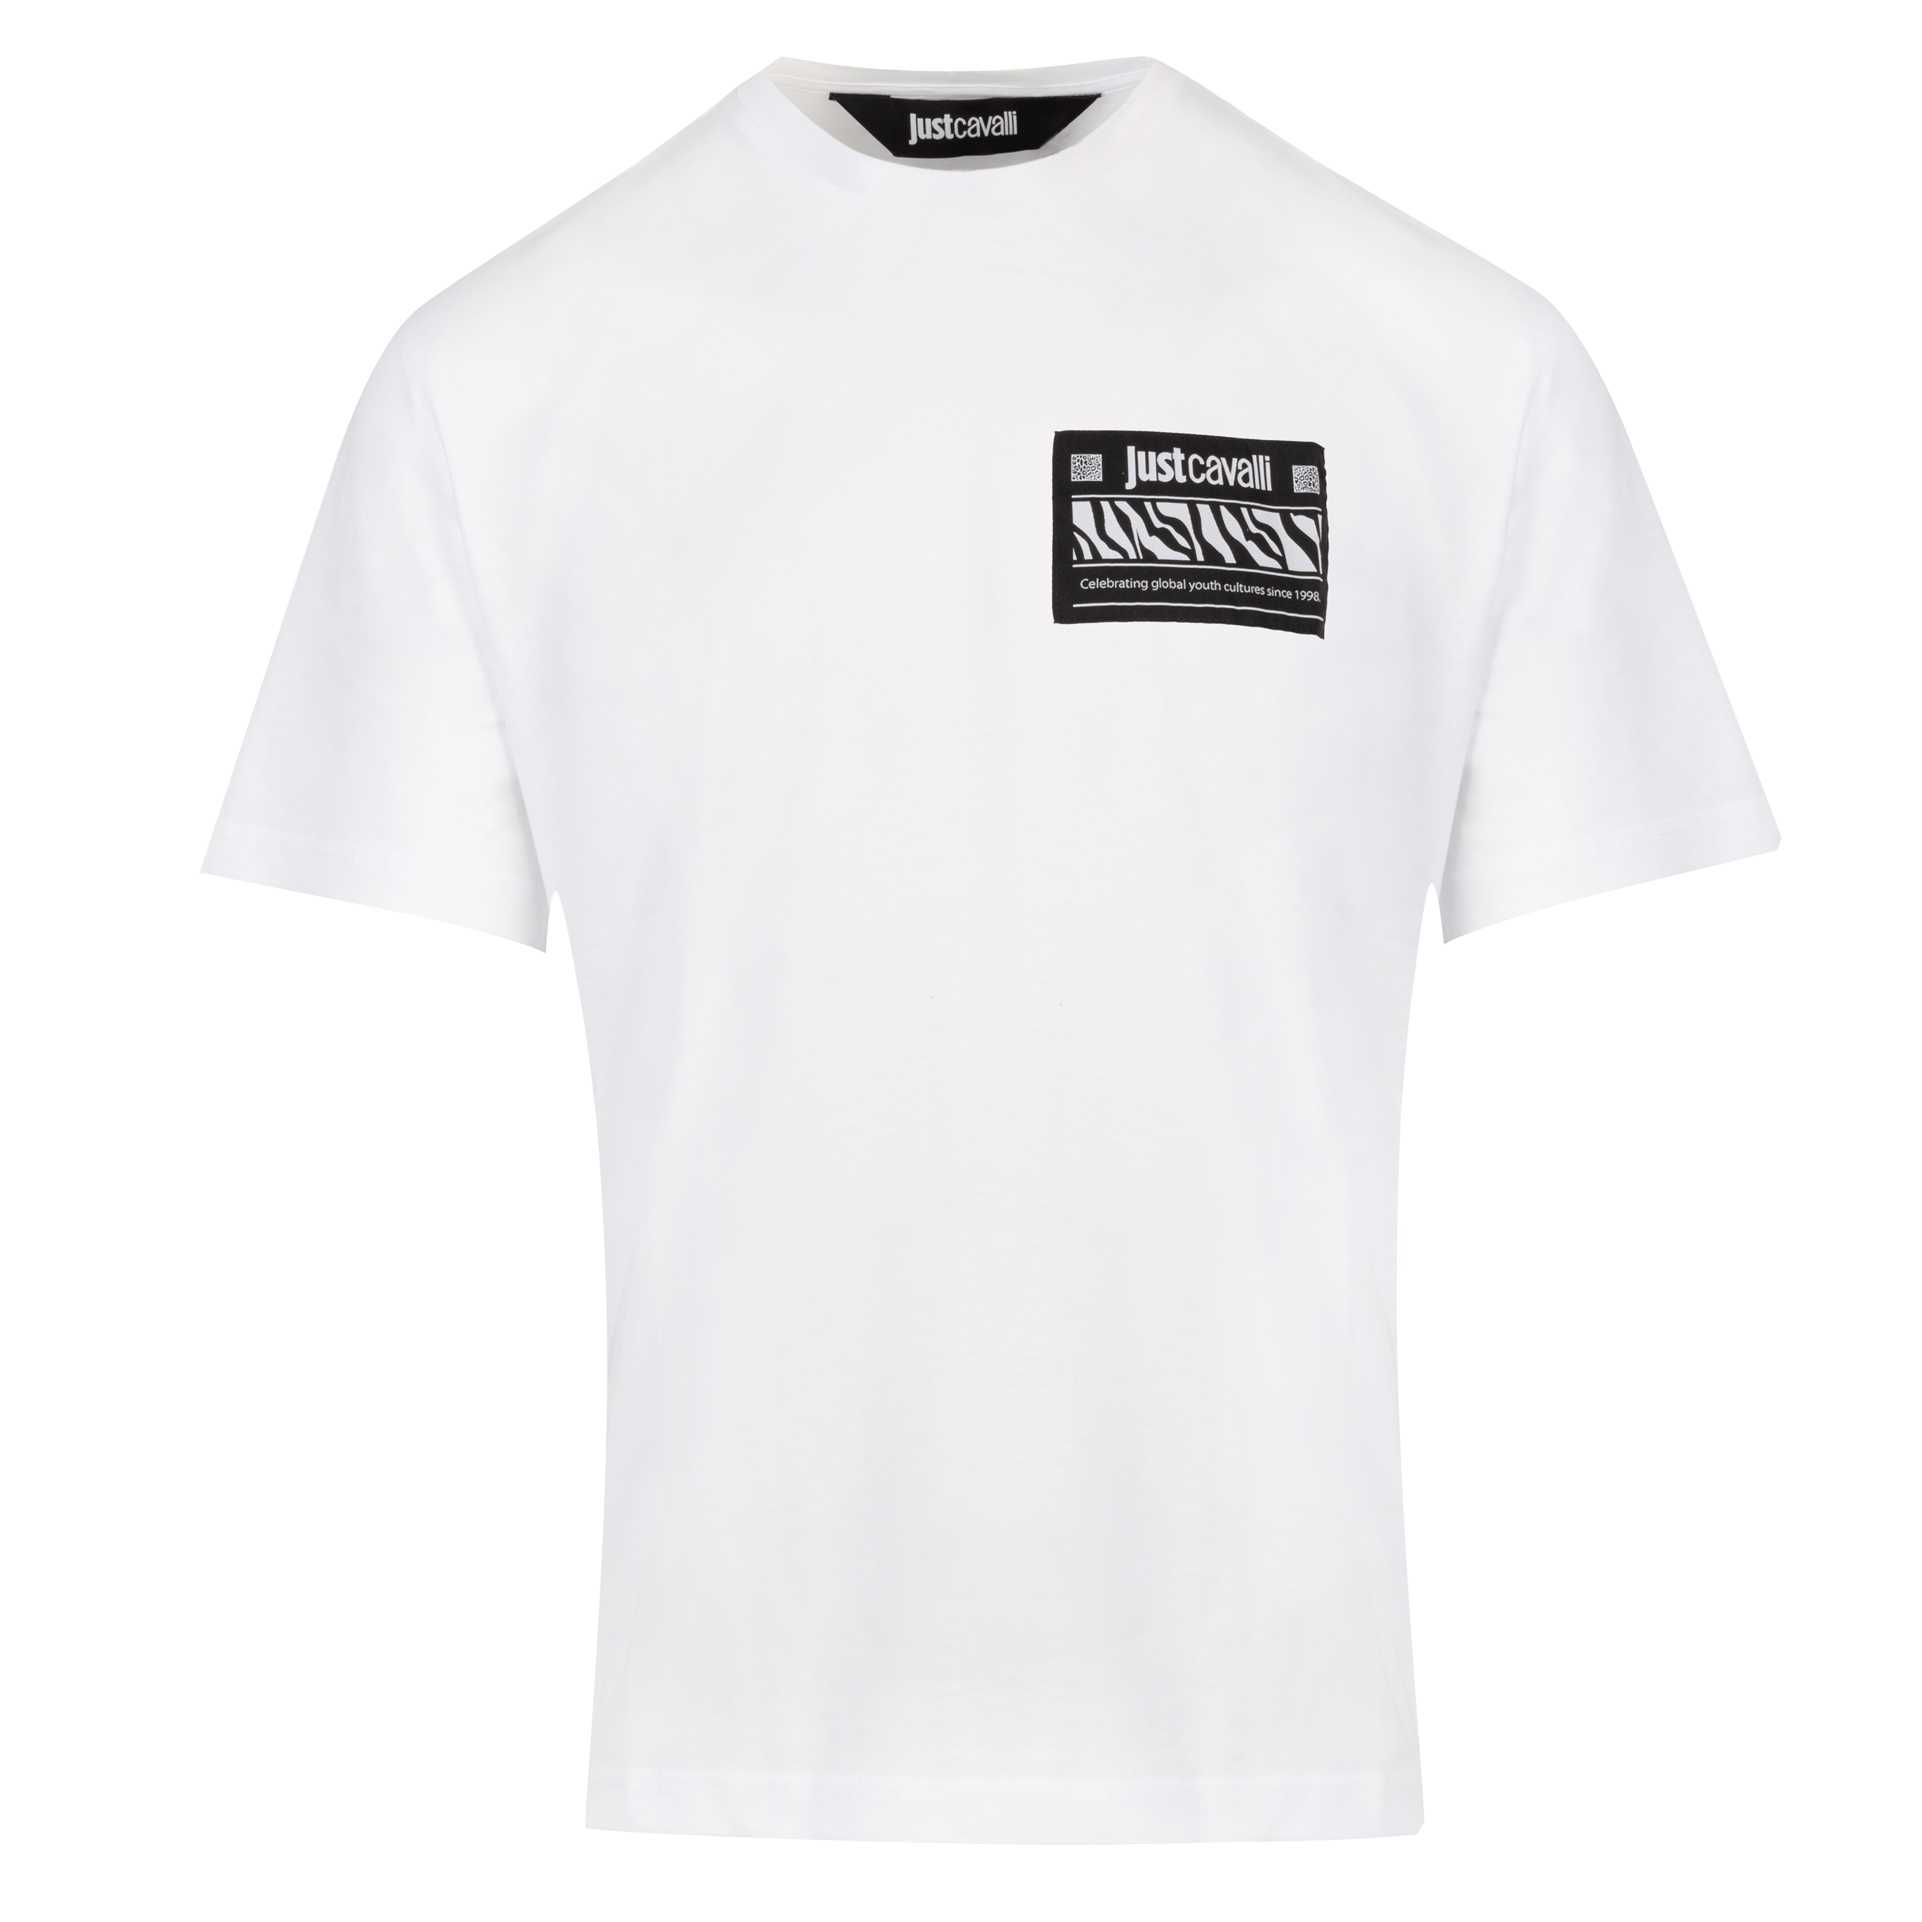 JUST CAVALLI markowy włoski t-shirt NOWOŚĆ WHITE